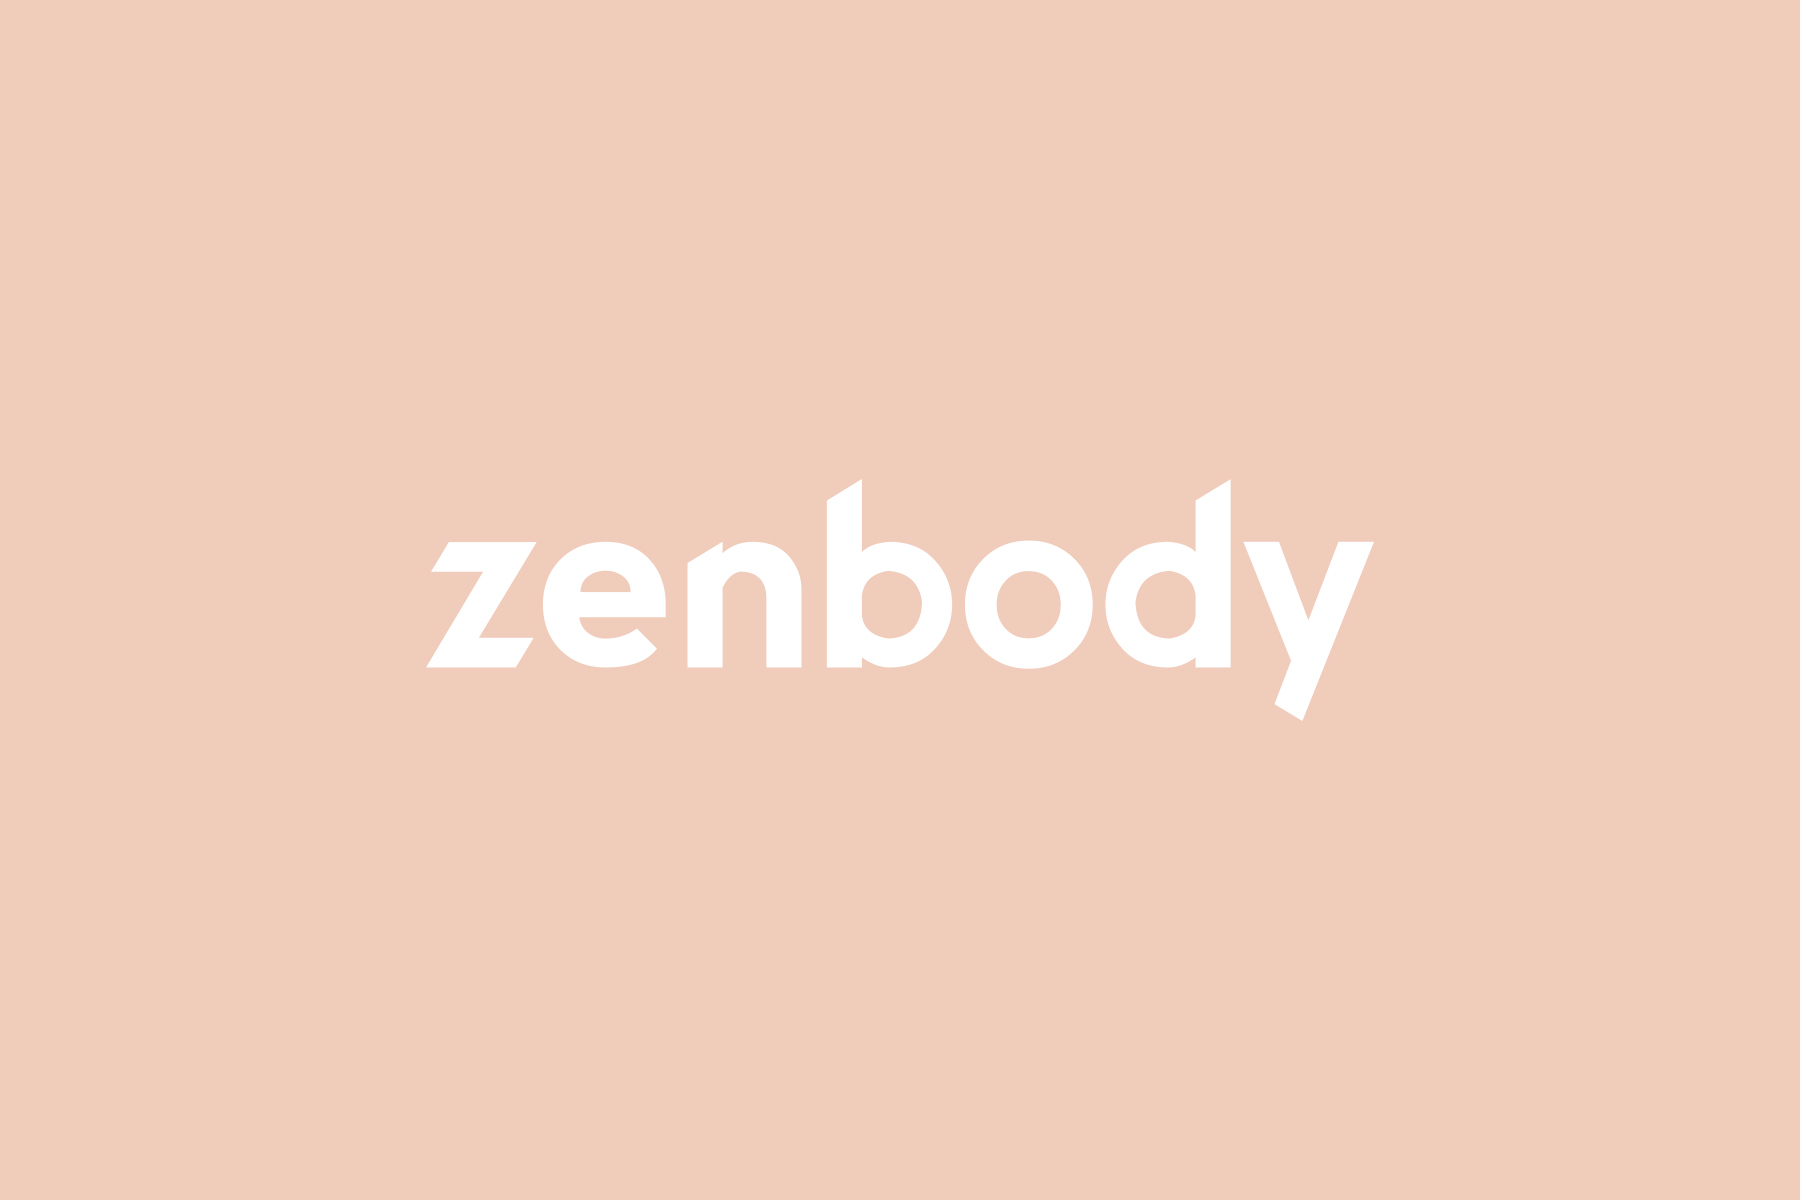 Zenbody-web1-logo.jpg